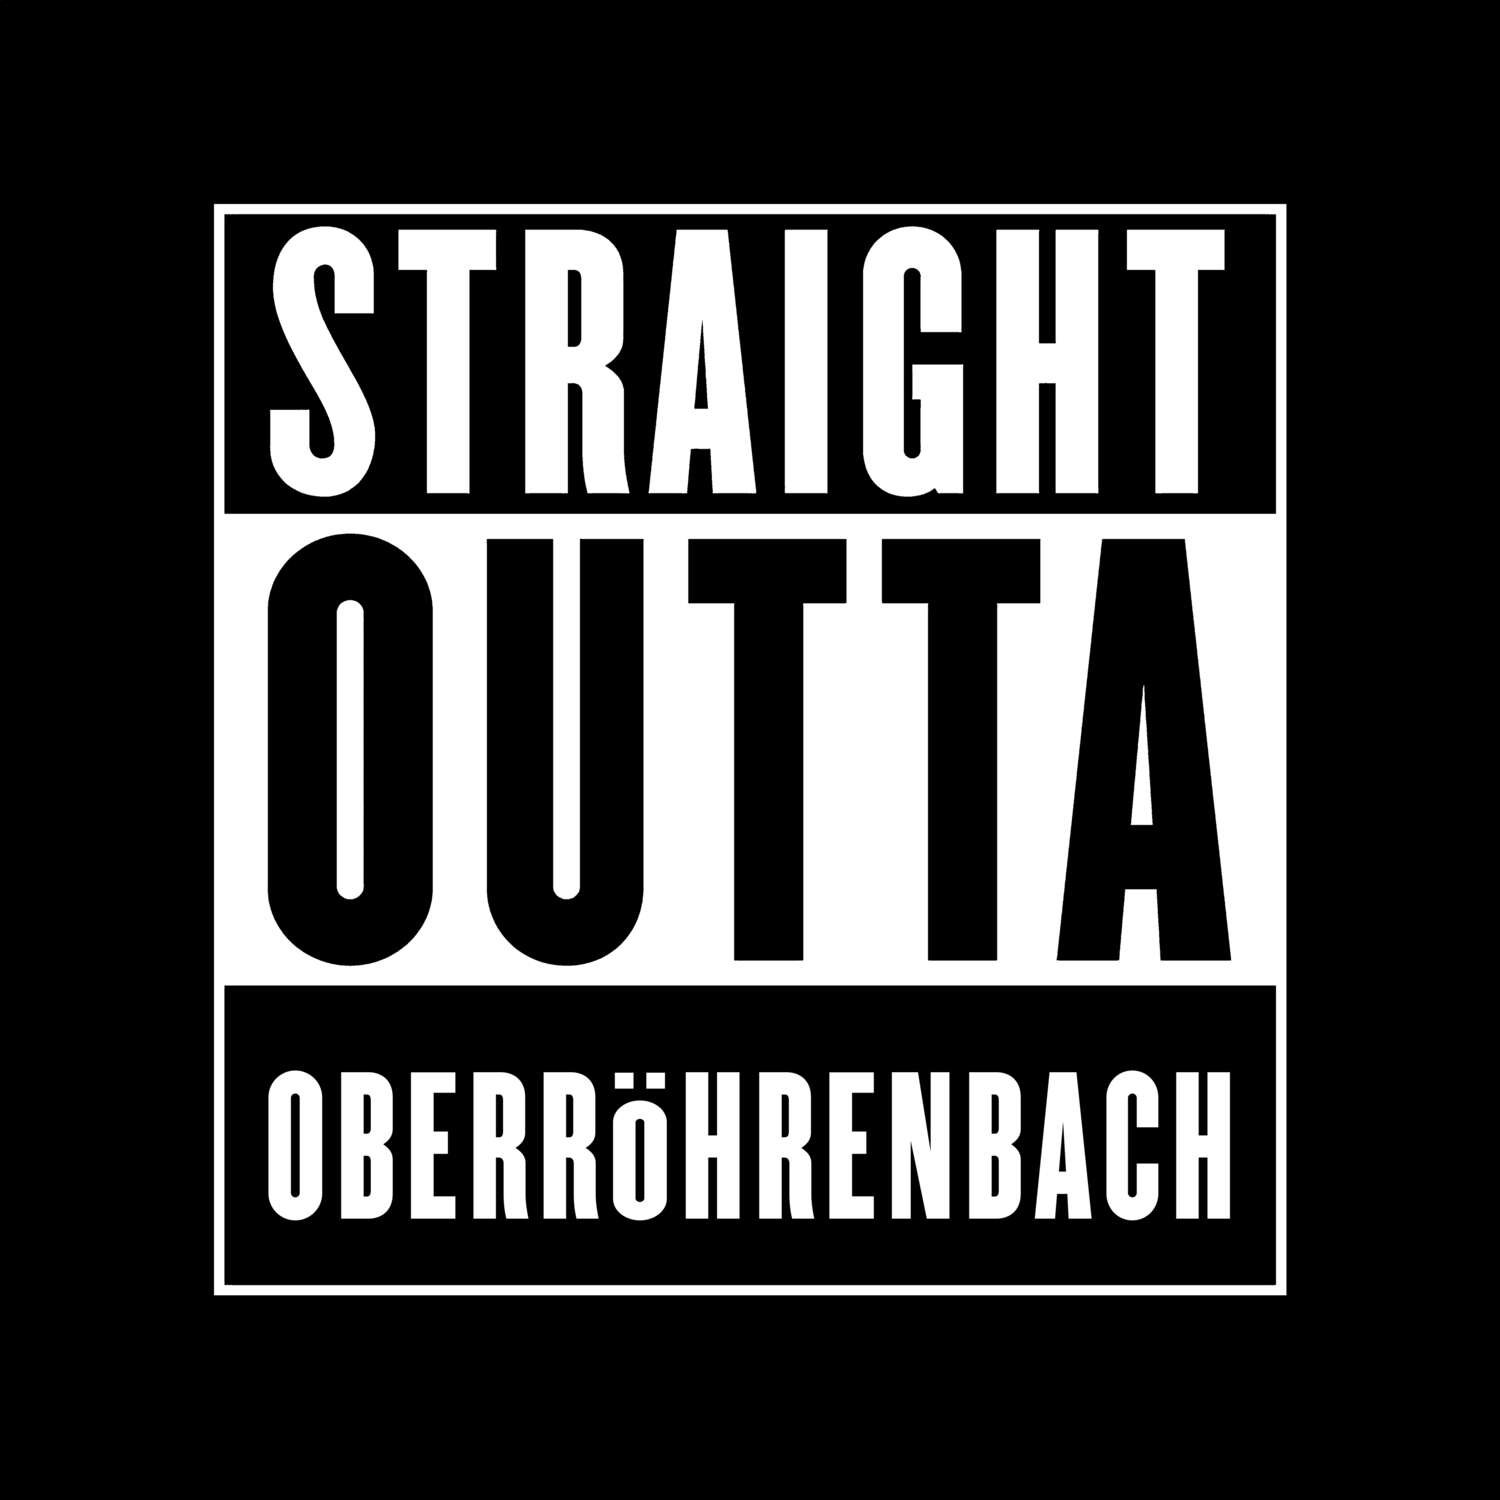 Oberröhrenbach T-Shirt »Straight Outta«